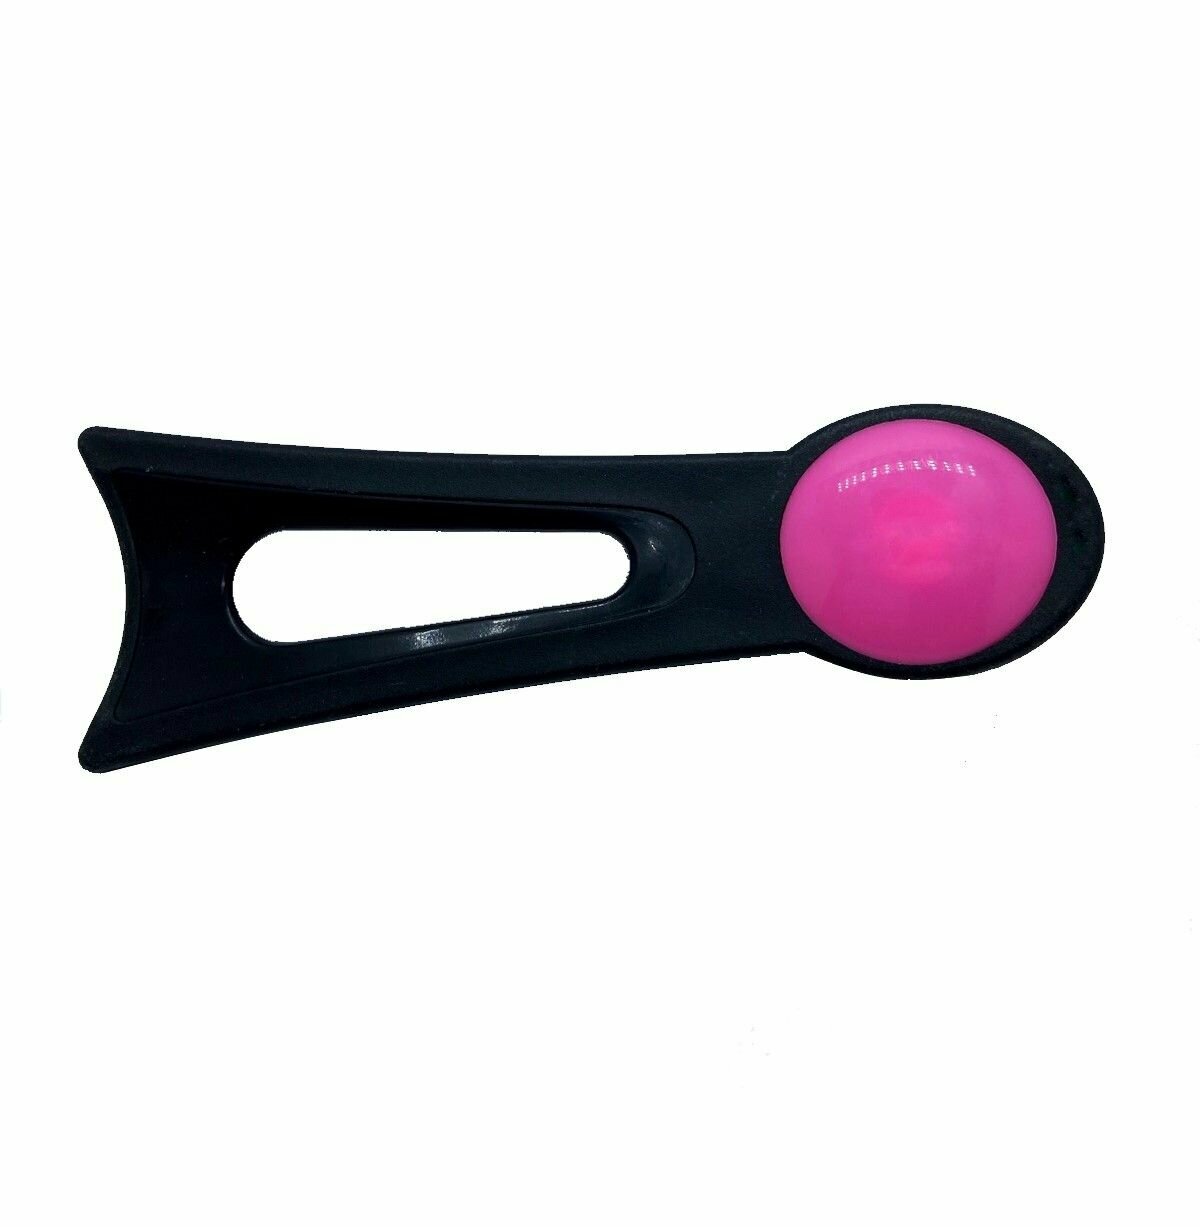 Ручка для крышки сковородки / Ручка для крышки кастрюли 152 см цвет черно-розовый